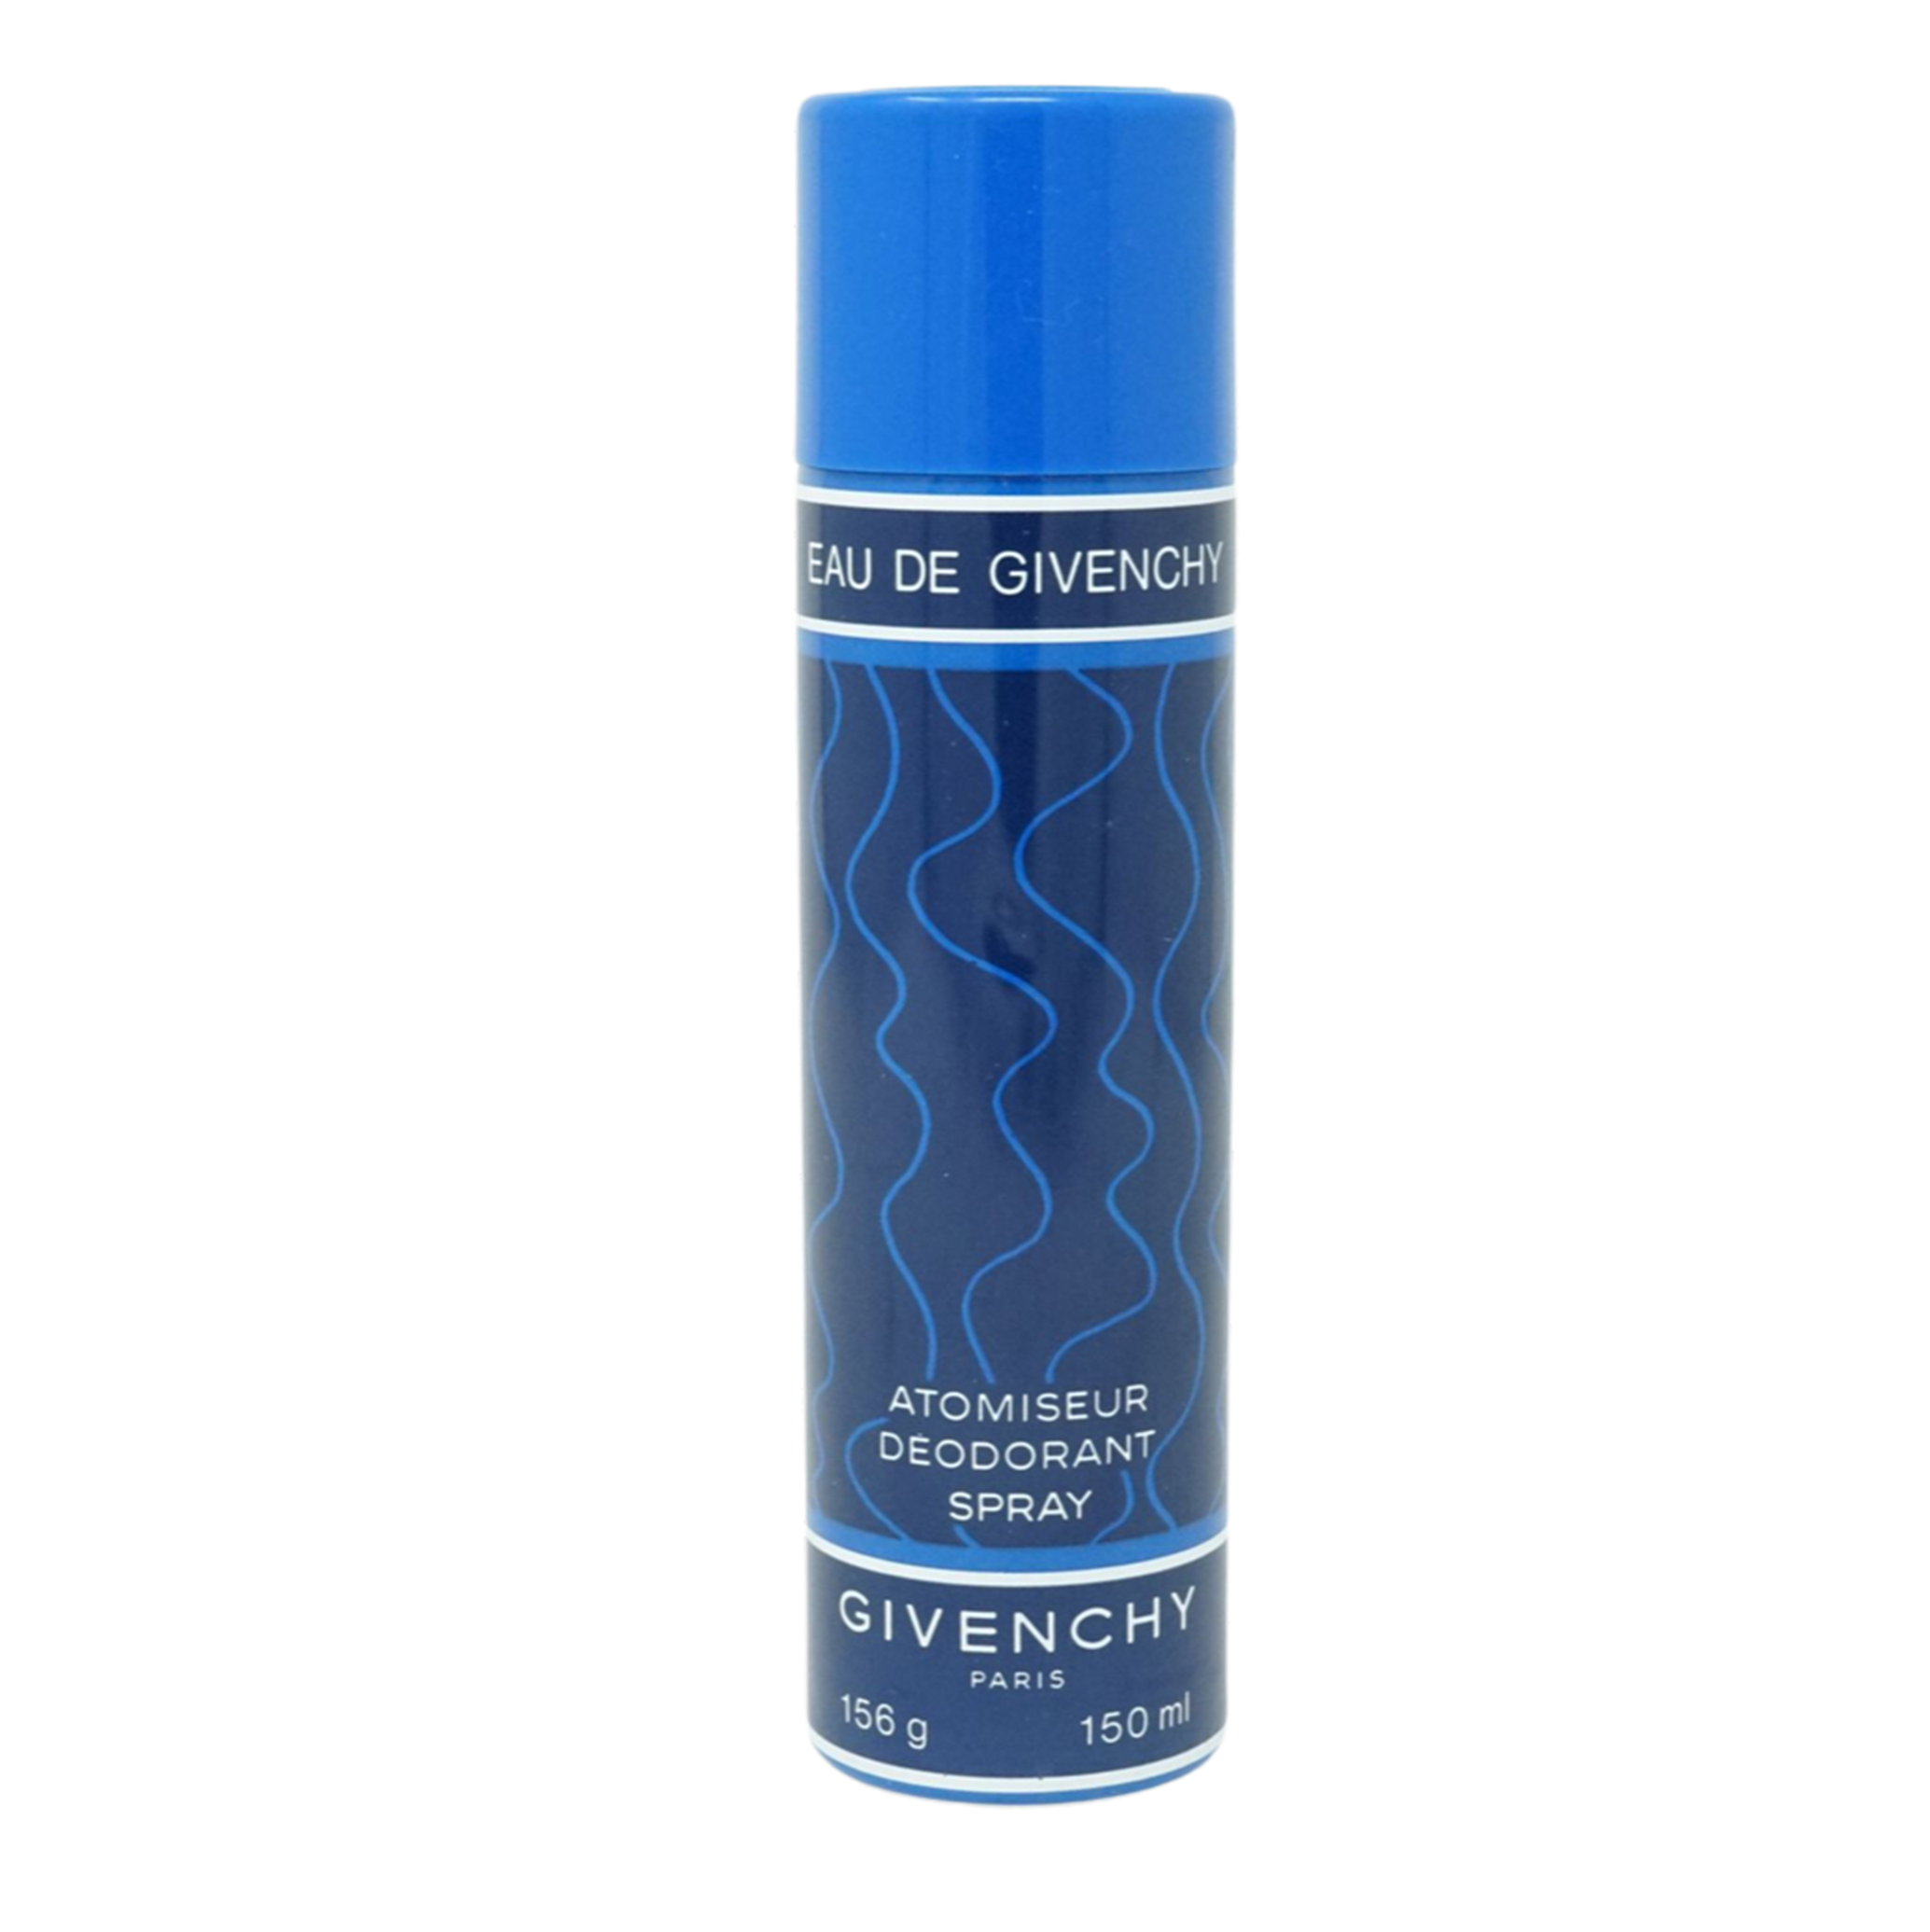 Givenchy Eau de Givenchy Atomiseur Deodorant Spray 150ml